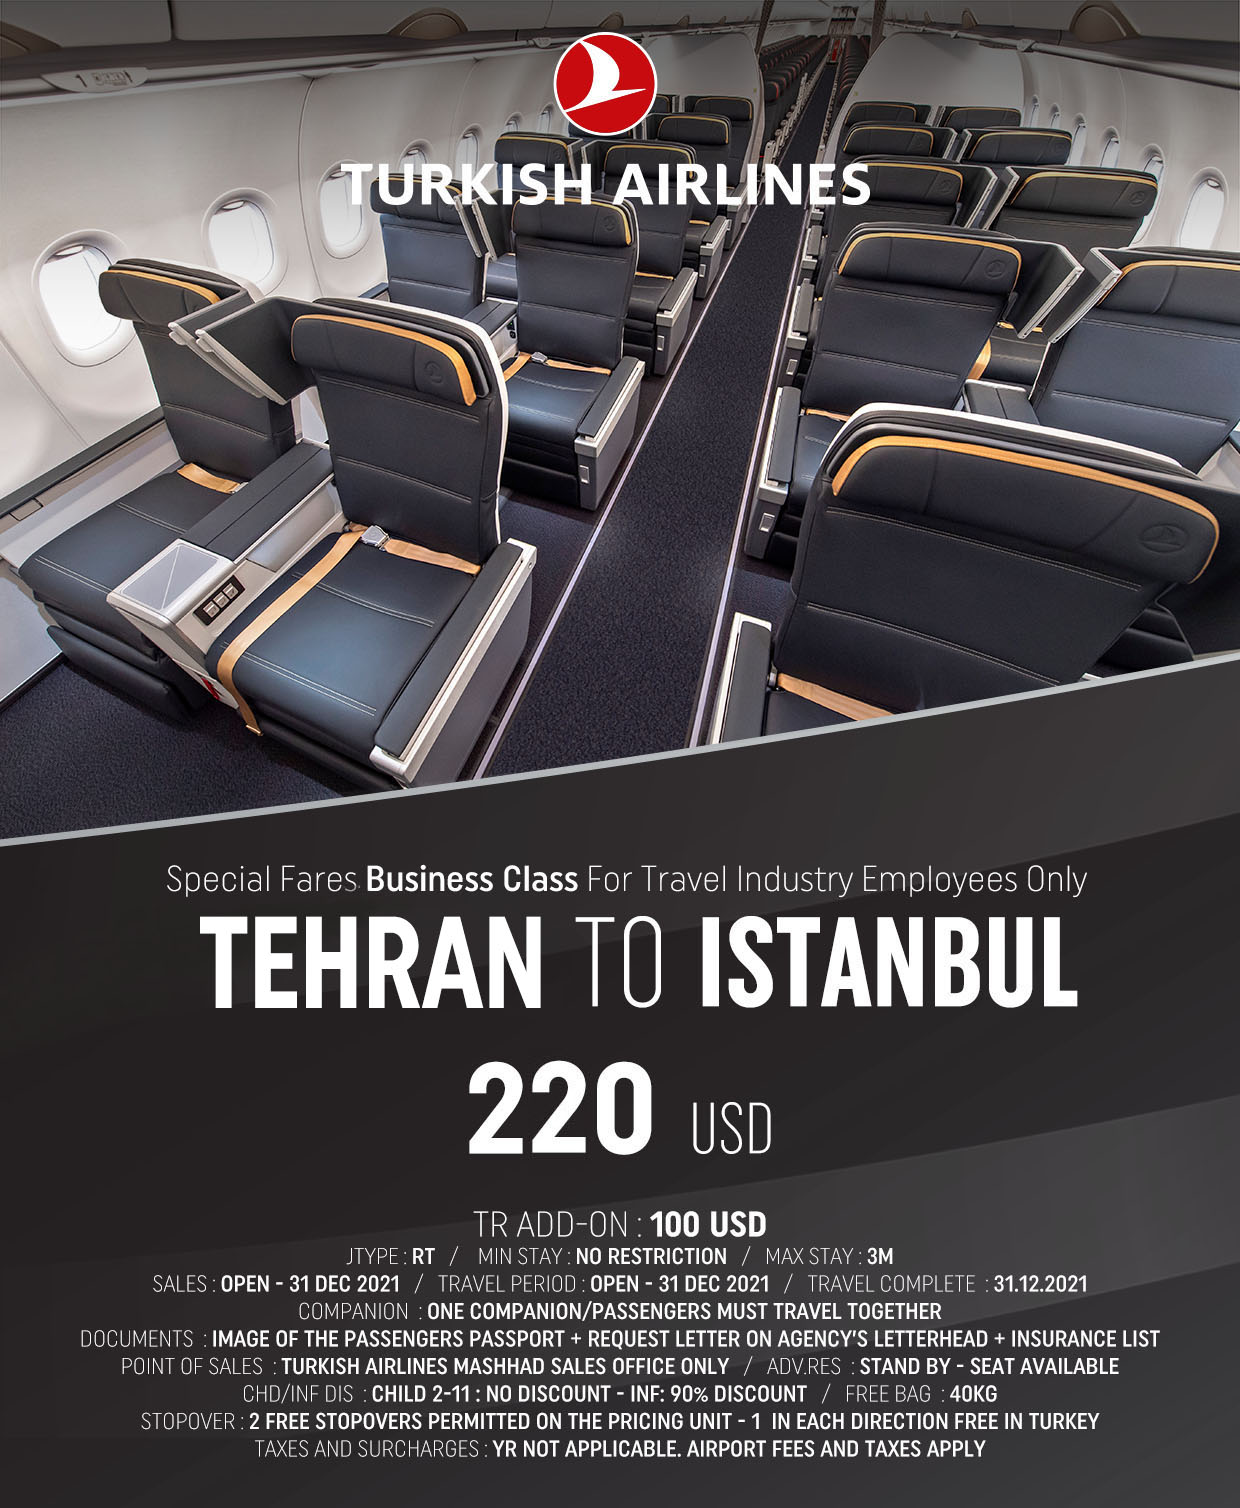 بخشنامه و اطلاعیه   هواپیمایی ترکیش درباره نرخ ویژه تهران استانبول در کابین بیزینس